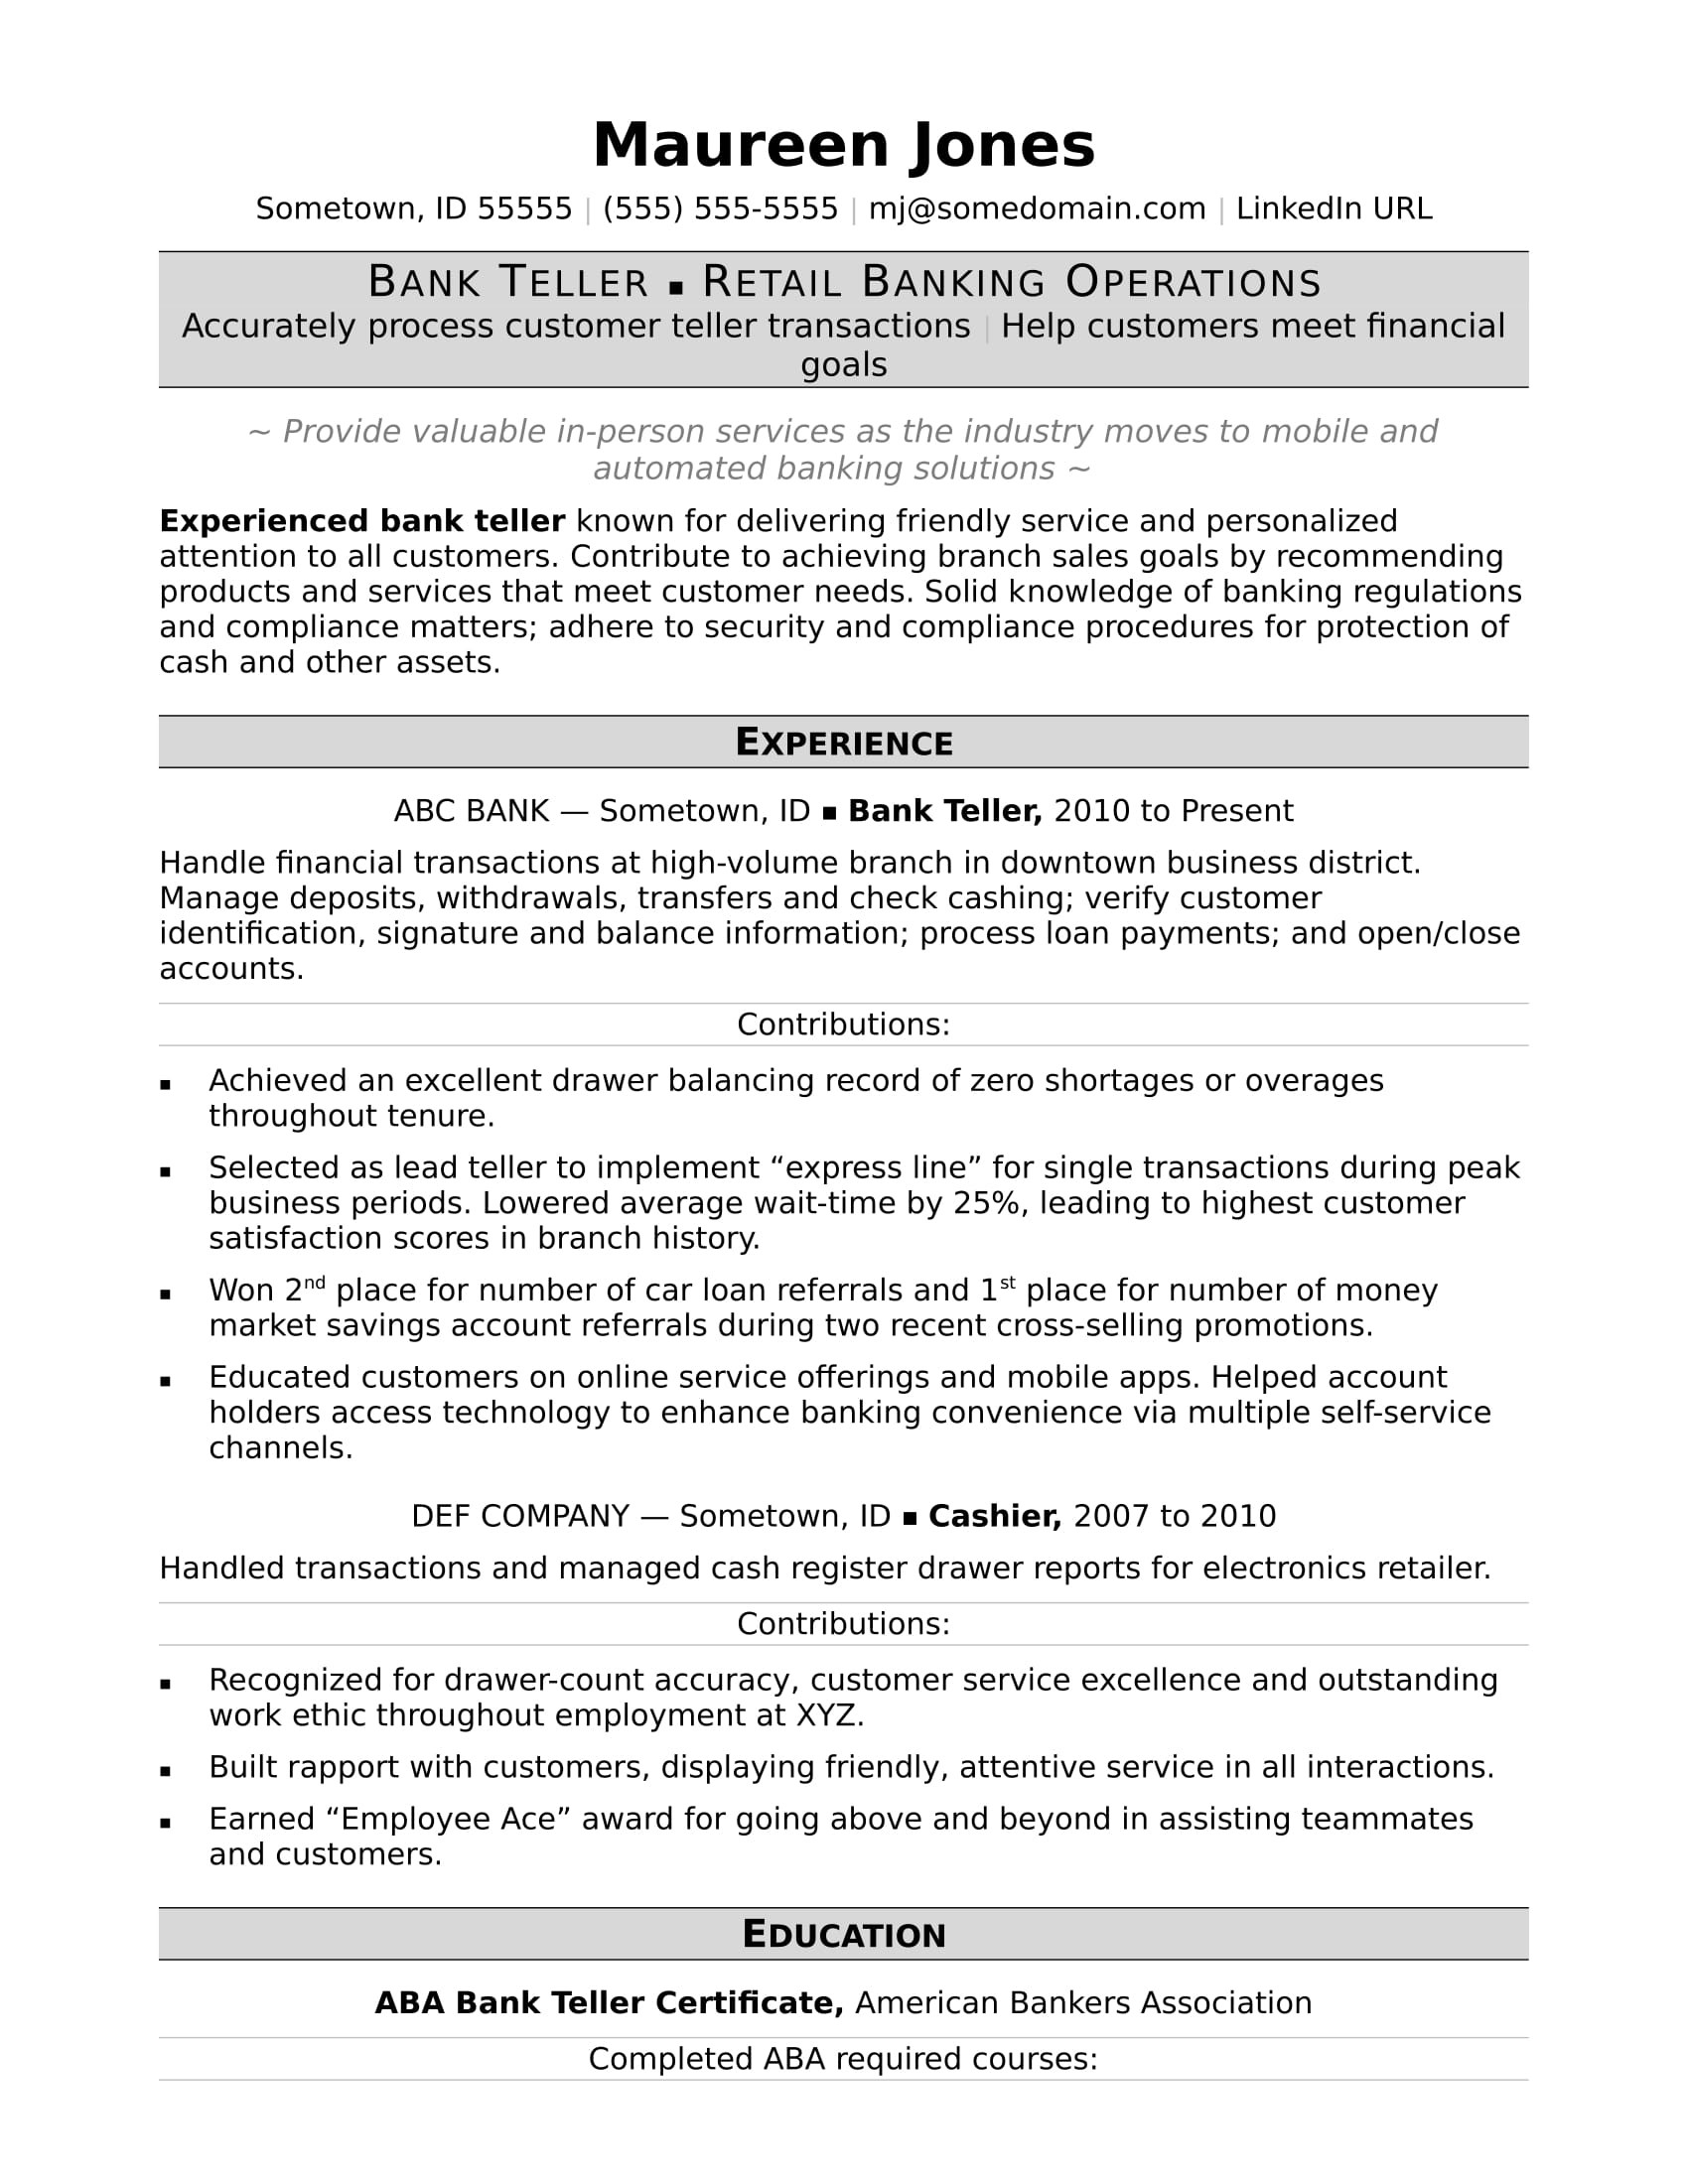 Sample Resume for Bank Teller to Community Relations Bank Teller Resume Monster.com